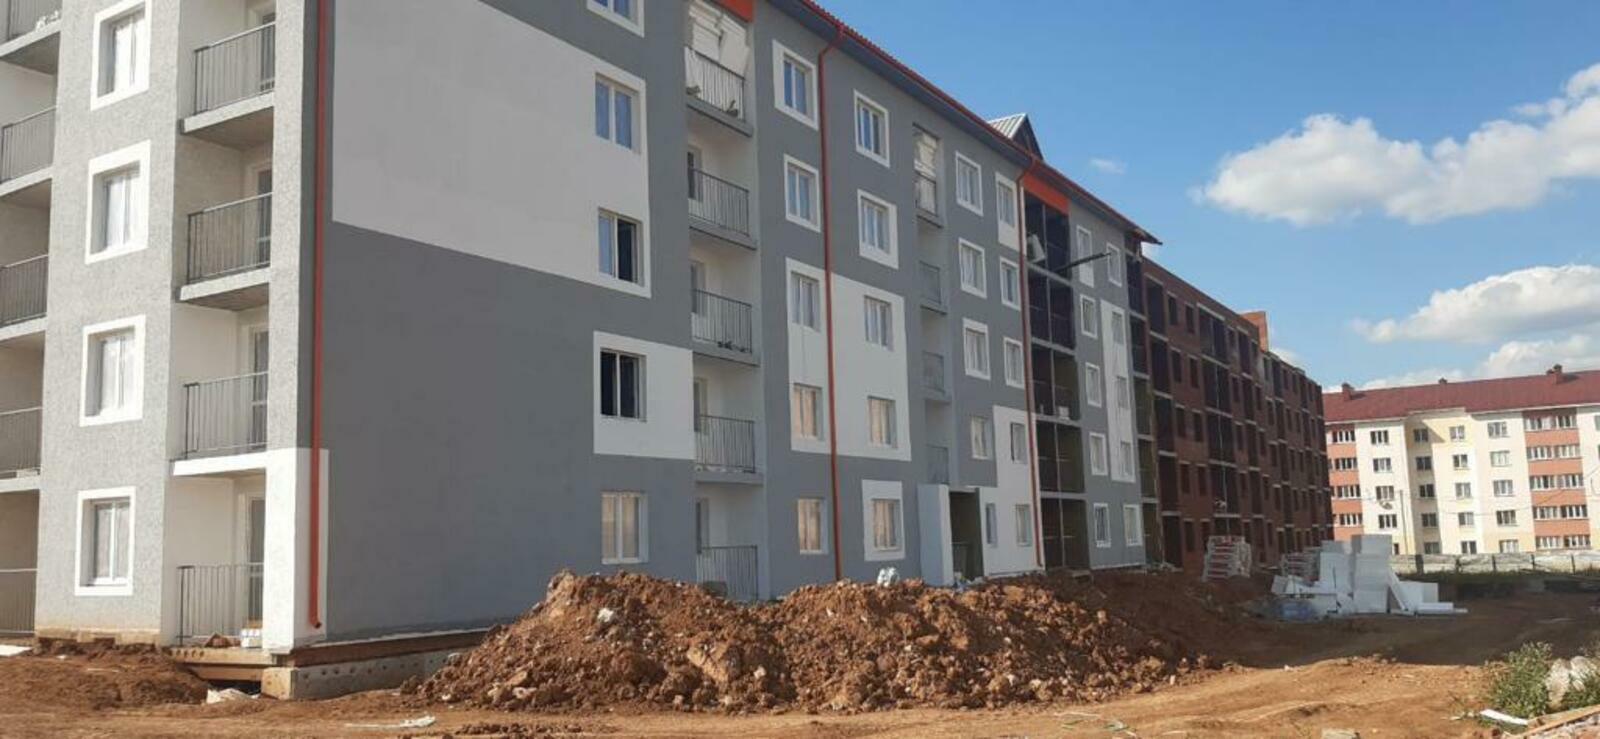 В г. Дюртюли Республики Башкортостан завершается строительство дома для переселения семей из аварийного жилья